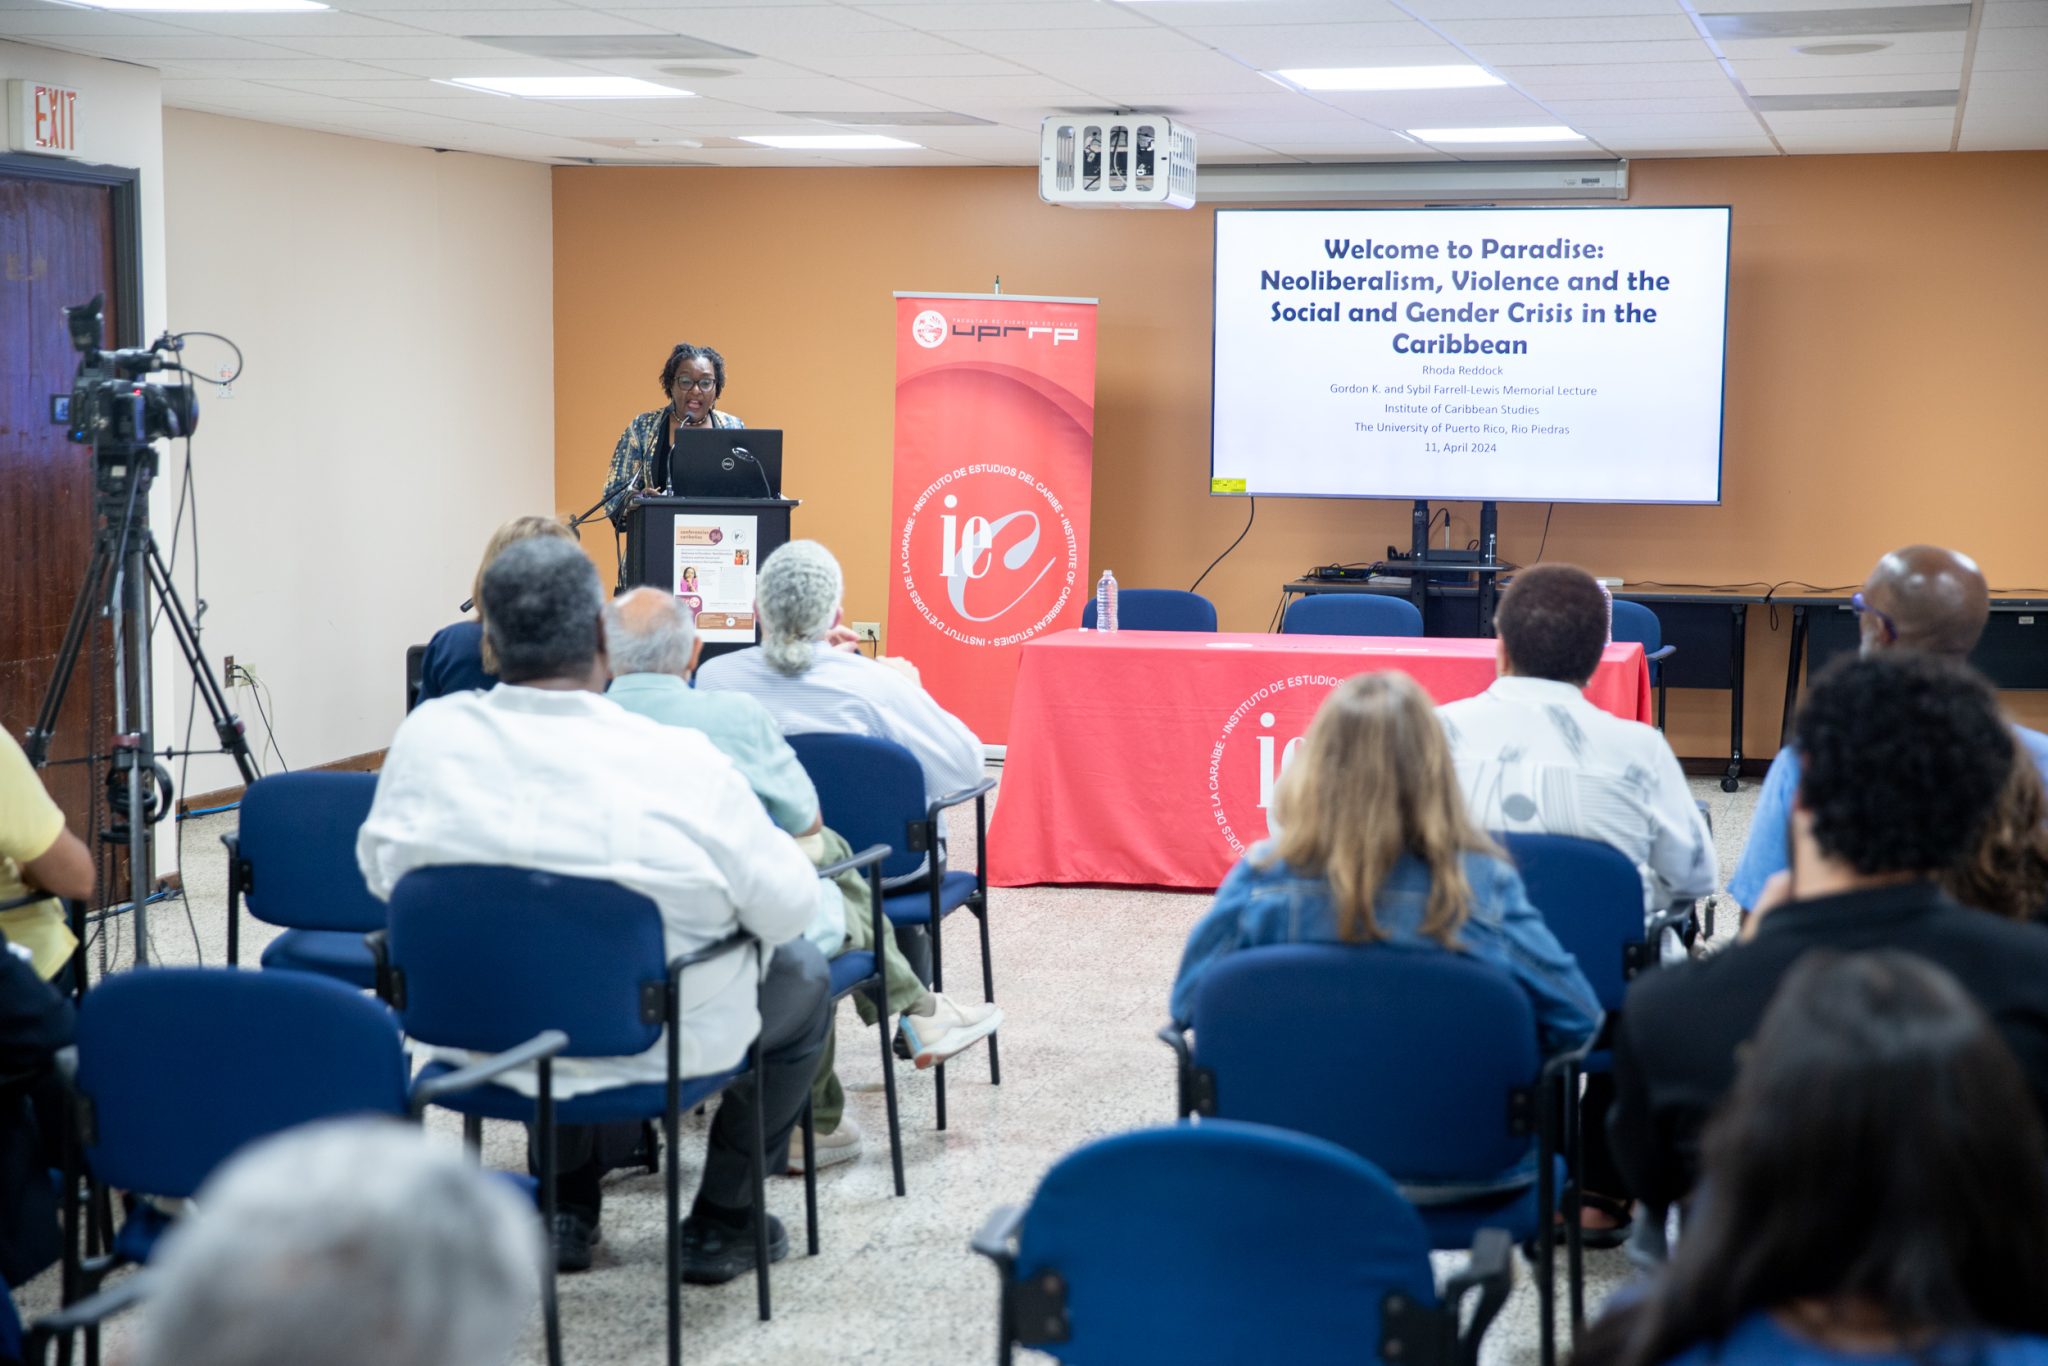 La profesora emérita y doctora Rhoda Reddock imparte su presentación “Bienvenidos al paraíso: Neoliberalismo, violencia y crisis social y de género en el Caribe”.